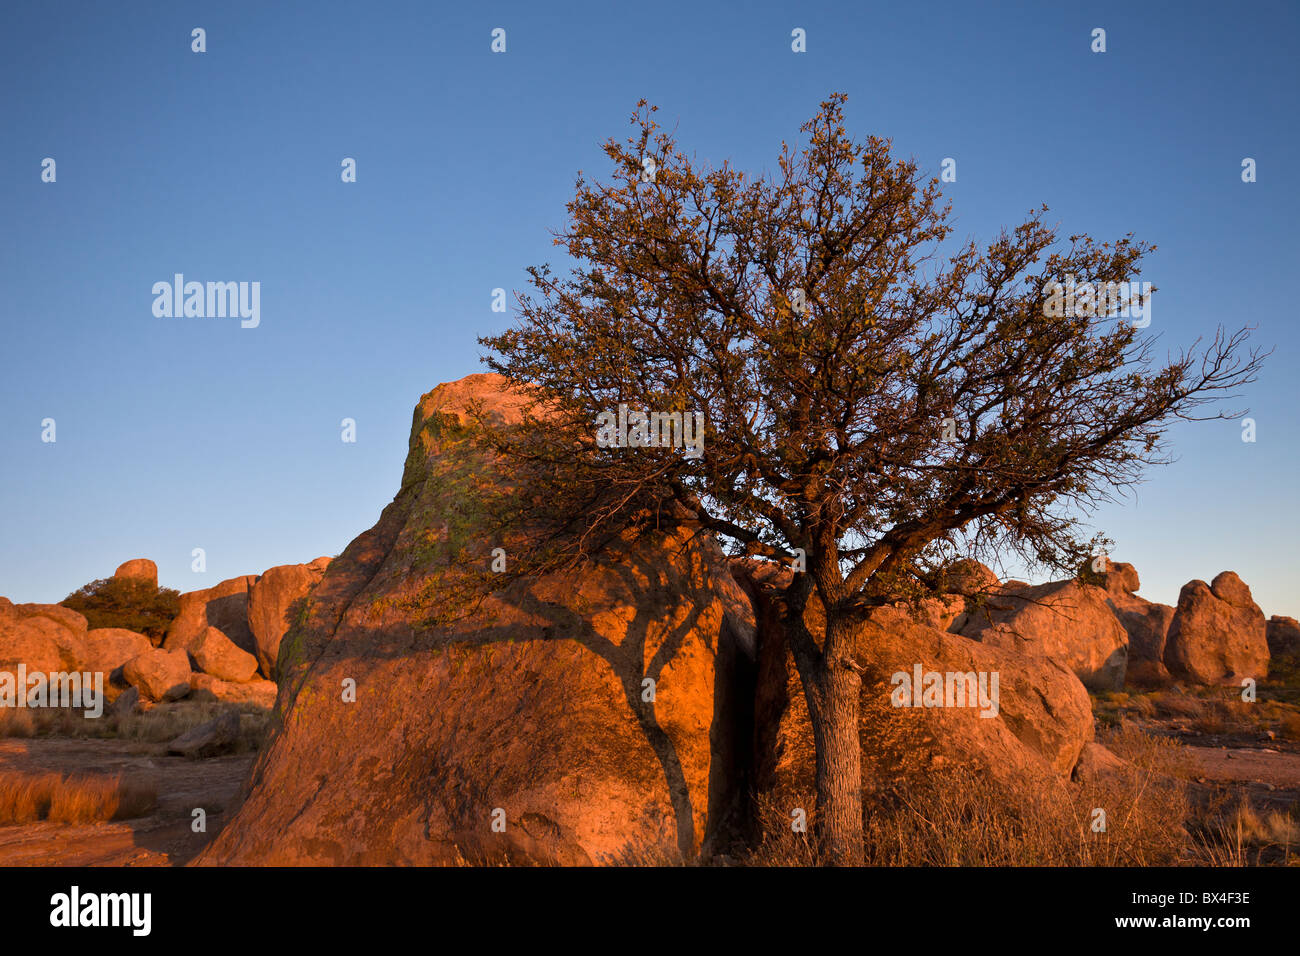 Warmen Sonnenuntergang Licht trifft auf einen einsamen Baum inmitten der monolithischen Felsformationen im City of Rocks State Park in New Mexico, USA. Stockfoto